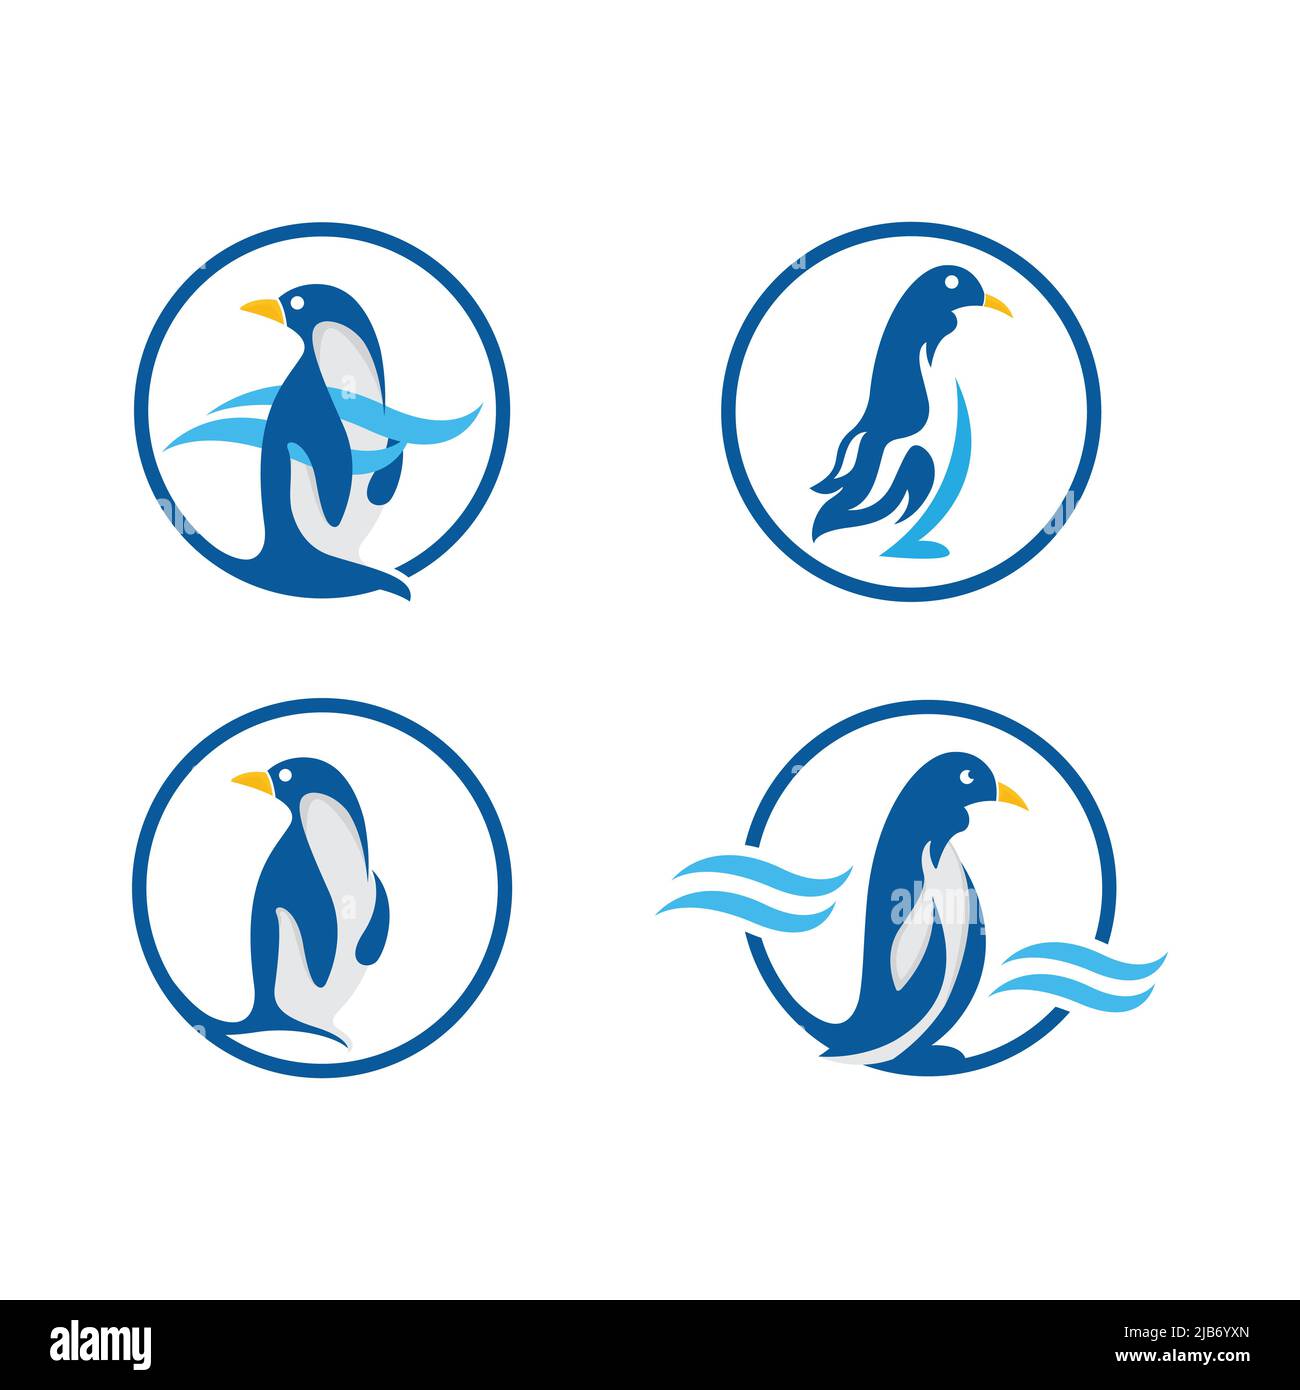 Set Pinguin illustration mascot logo, good for mascot, icon ,banner, etc.EPS 10 Stock Vector